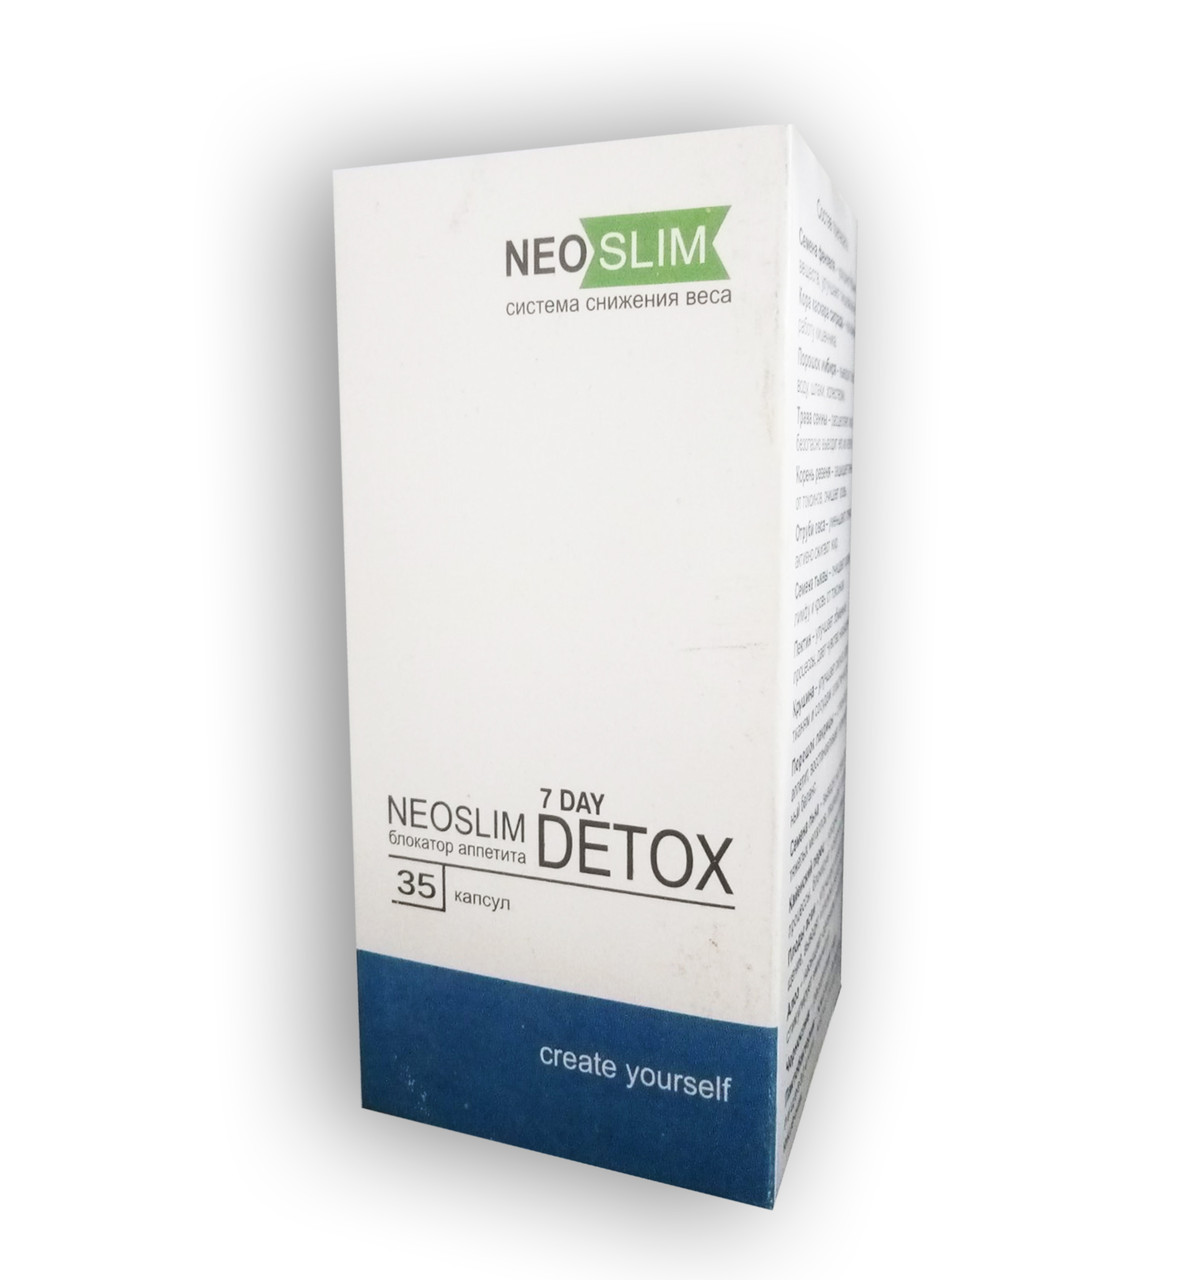 

Neo Slim 7 Day Detox - Комплекс для снижения веса (Нео Слим Севен Дей Детокс) #E/N